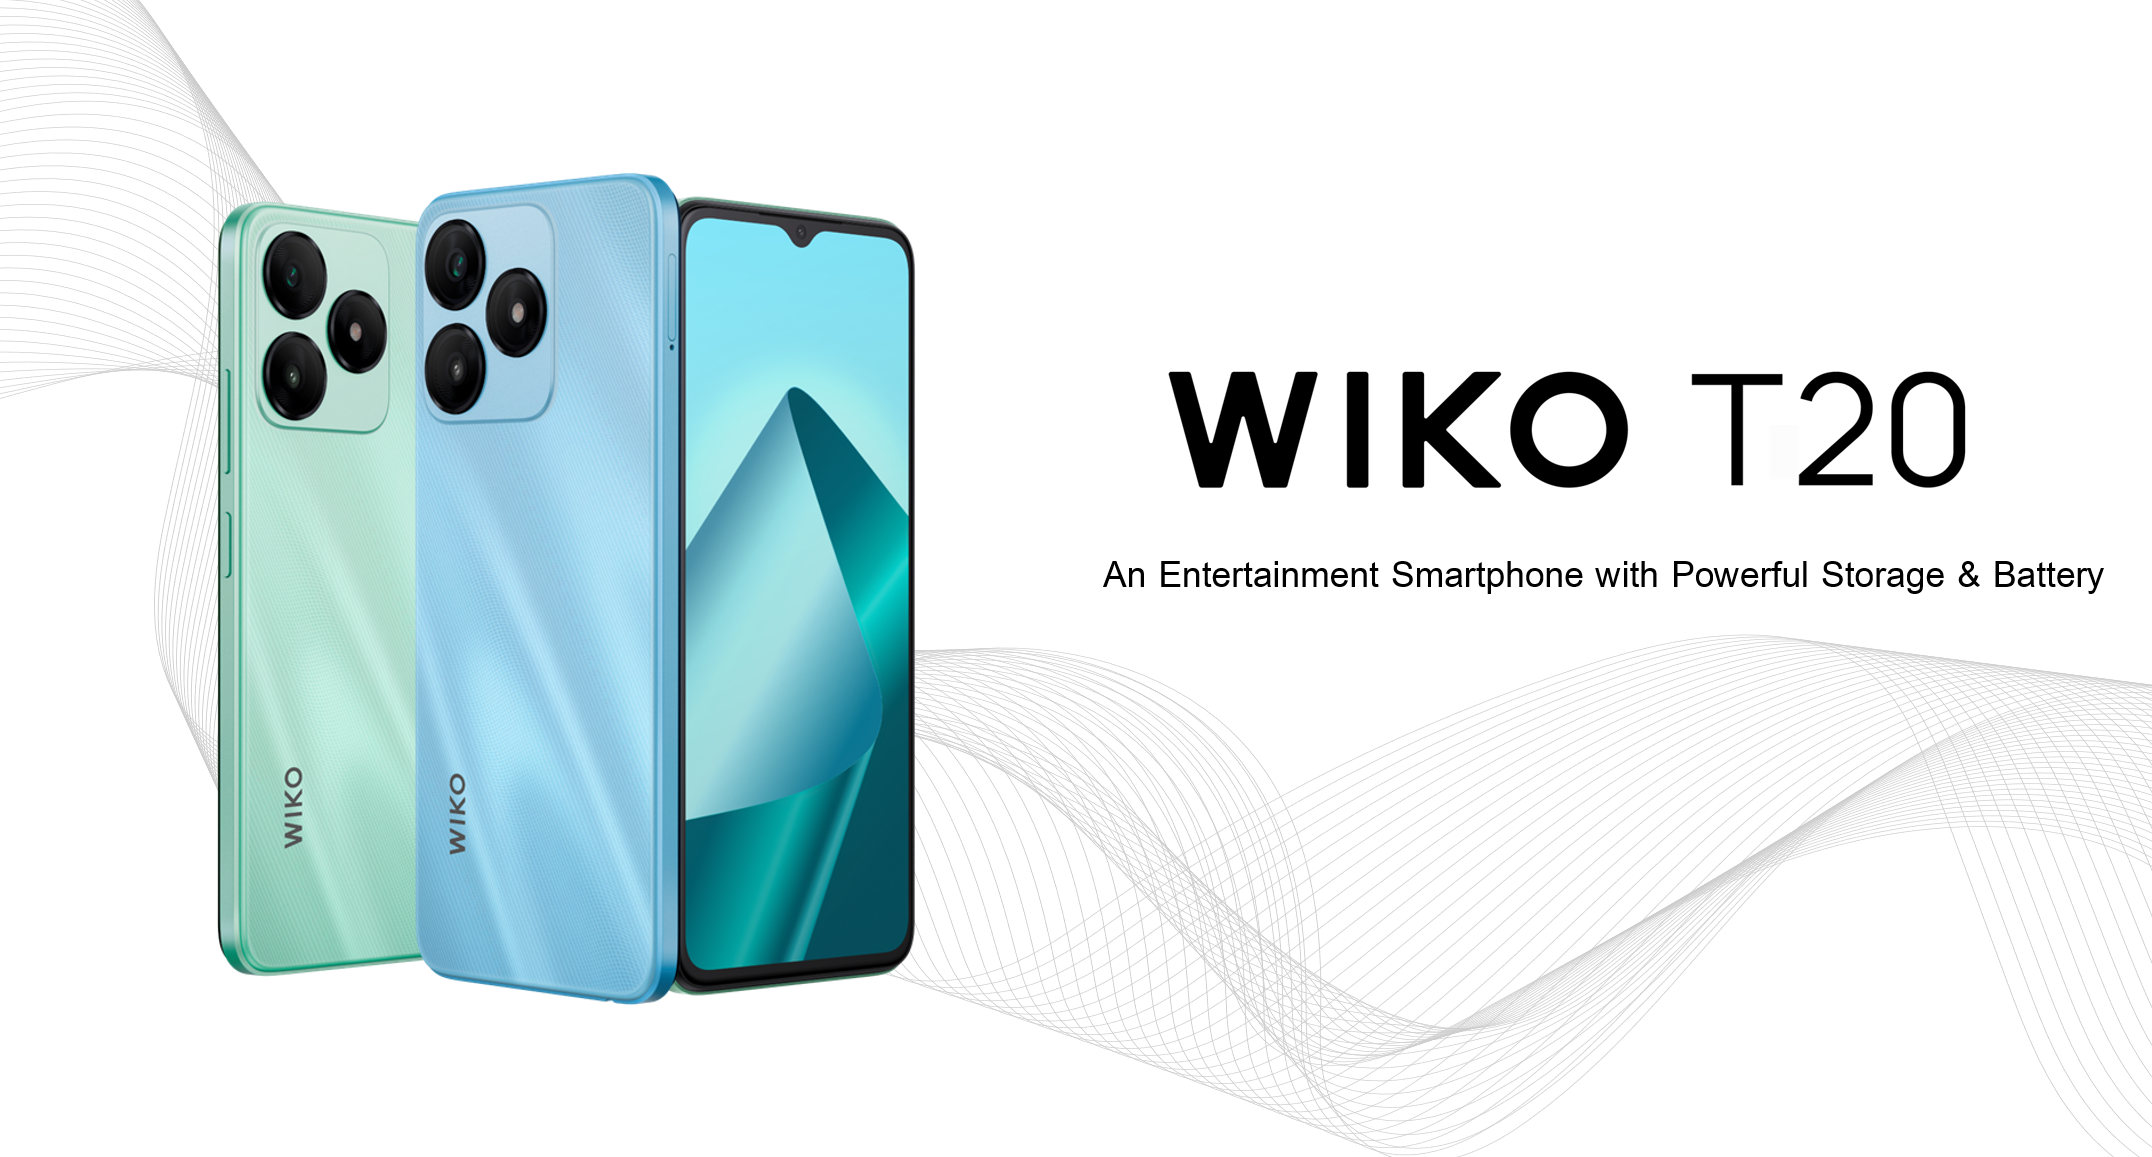 วีเอสที อีซีเอส (ประเทศไทย) ประเดิมการกลับมาของ WIKO ด้วย WIKO T20 พร้อม WIKO Buds 10 ในราคาโปรสุดคุ้มเพียง 2,999 บาท